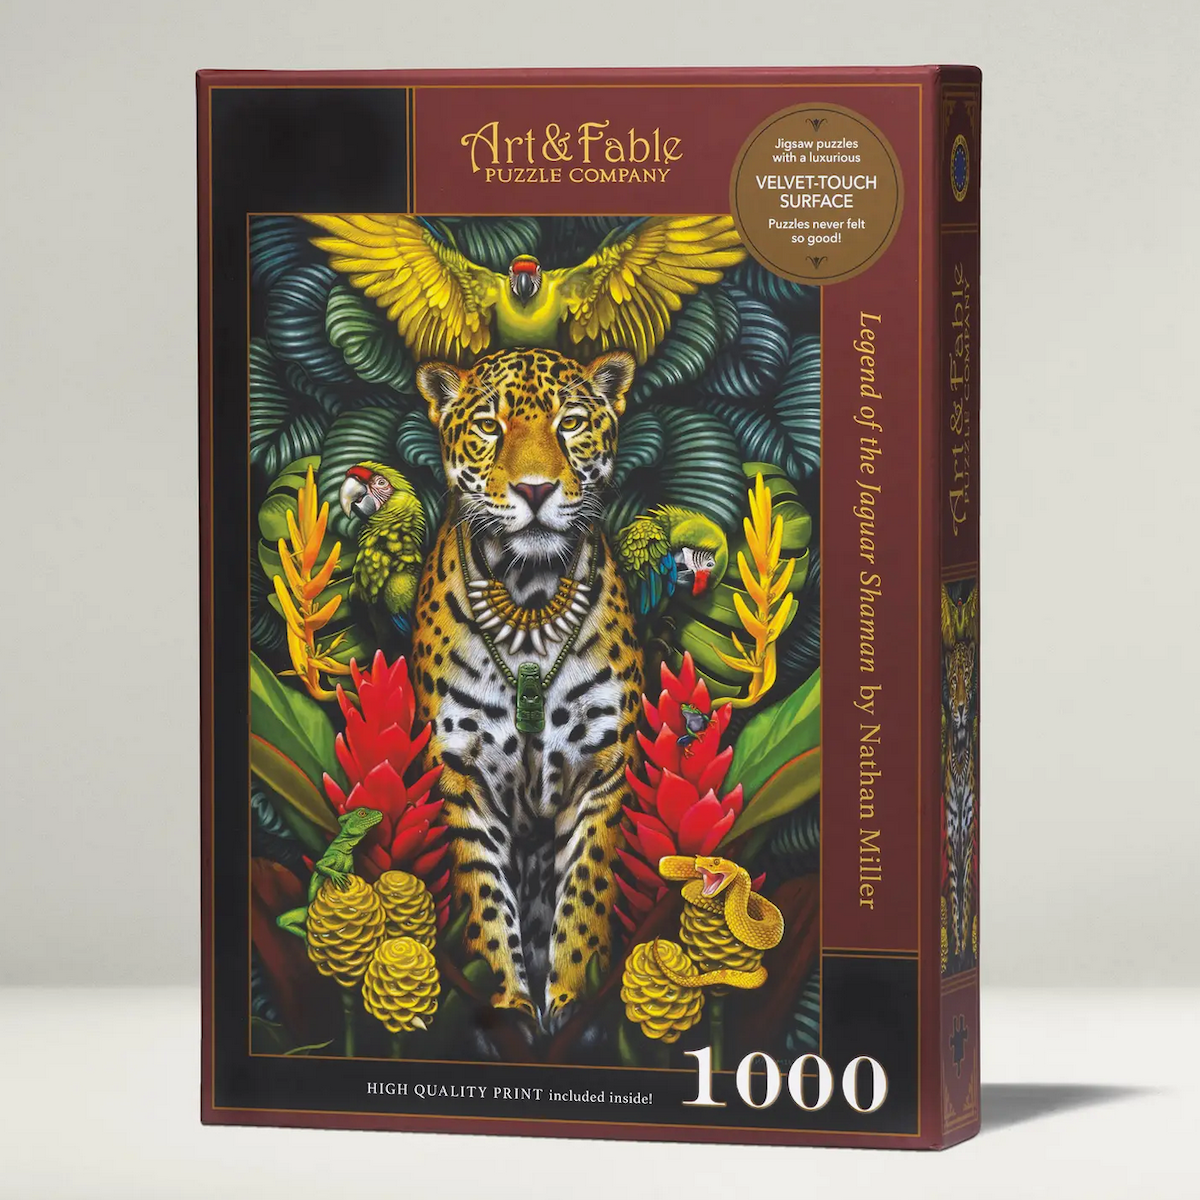 Legend of the Jaguare ArtFable Puzzle 1000pc Velvet Touch